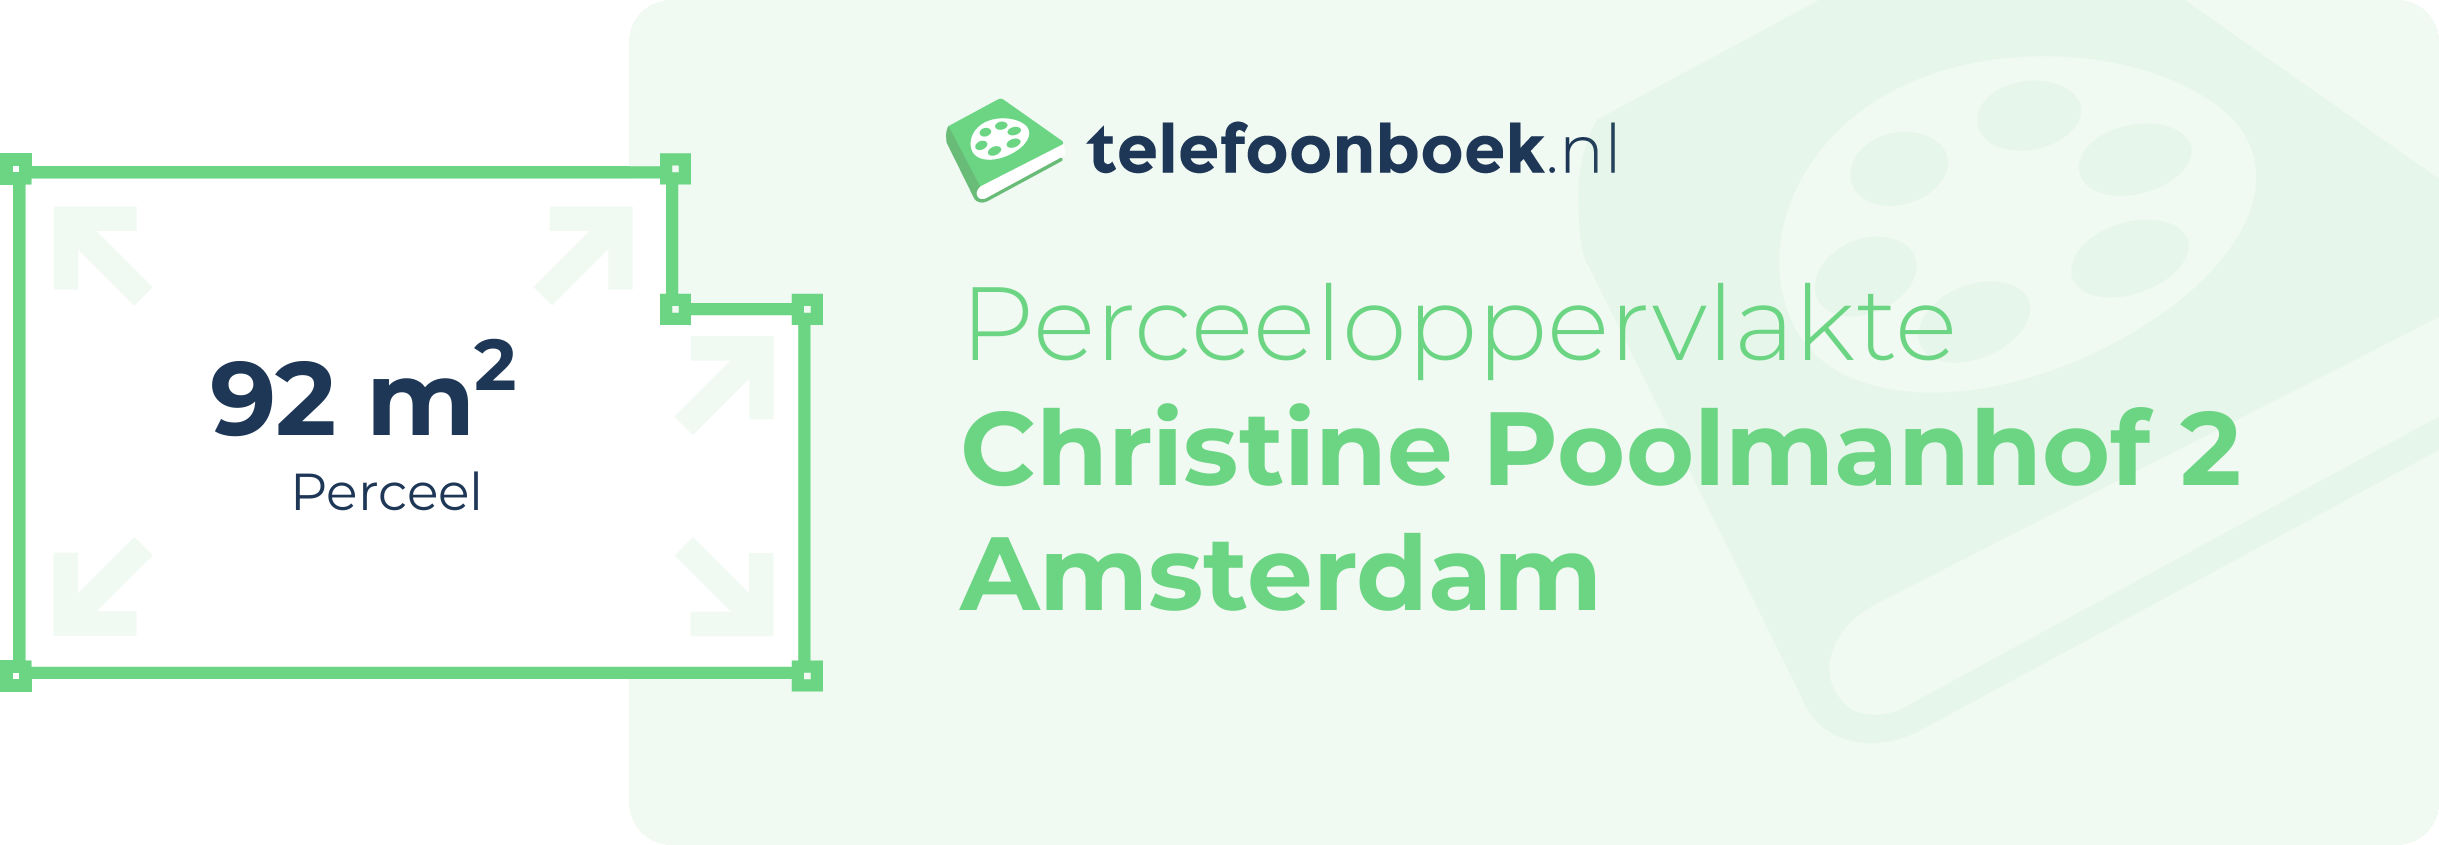 Perceeloppervlakte Christine Poolmanhof 2 Amsterdam